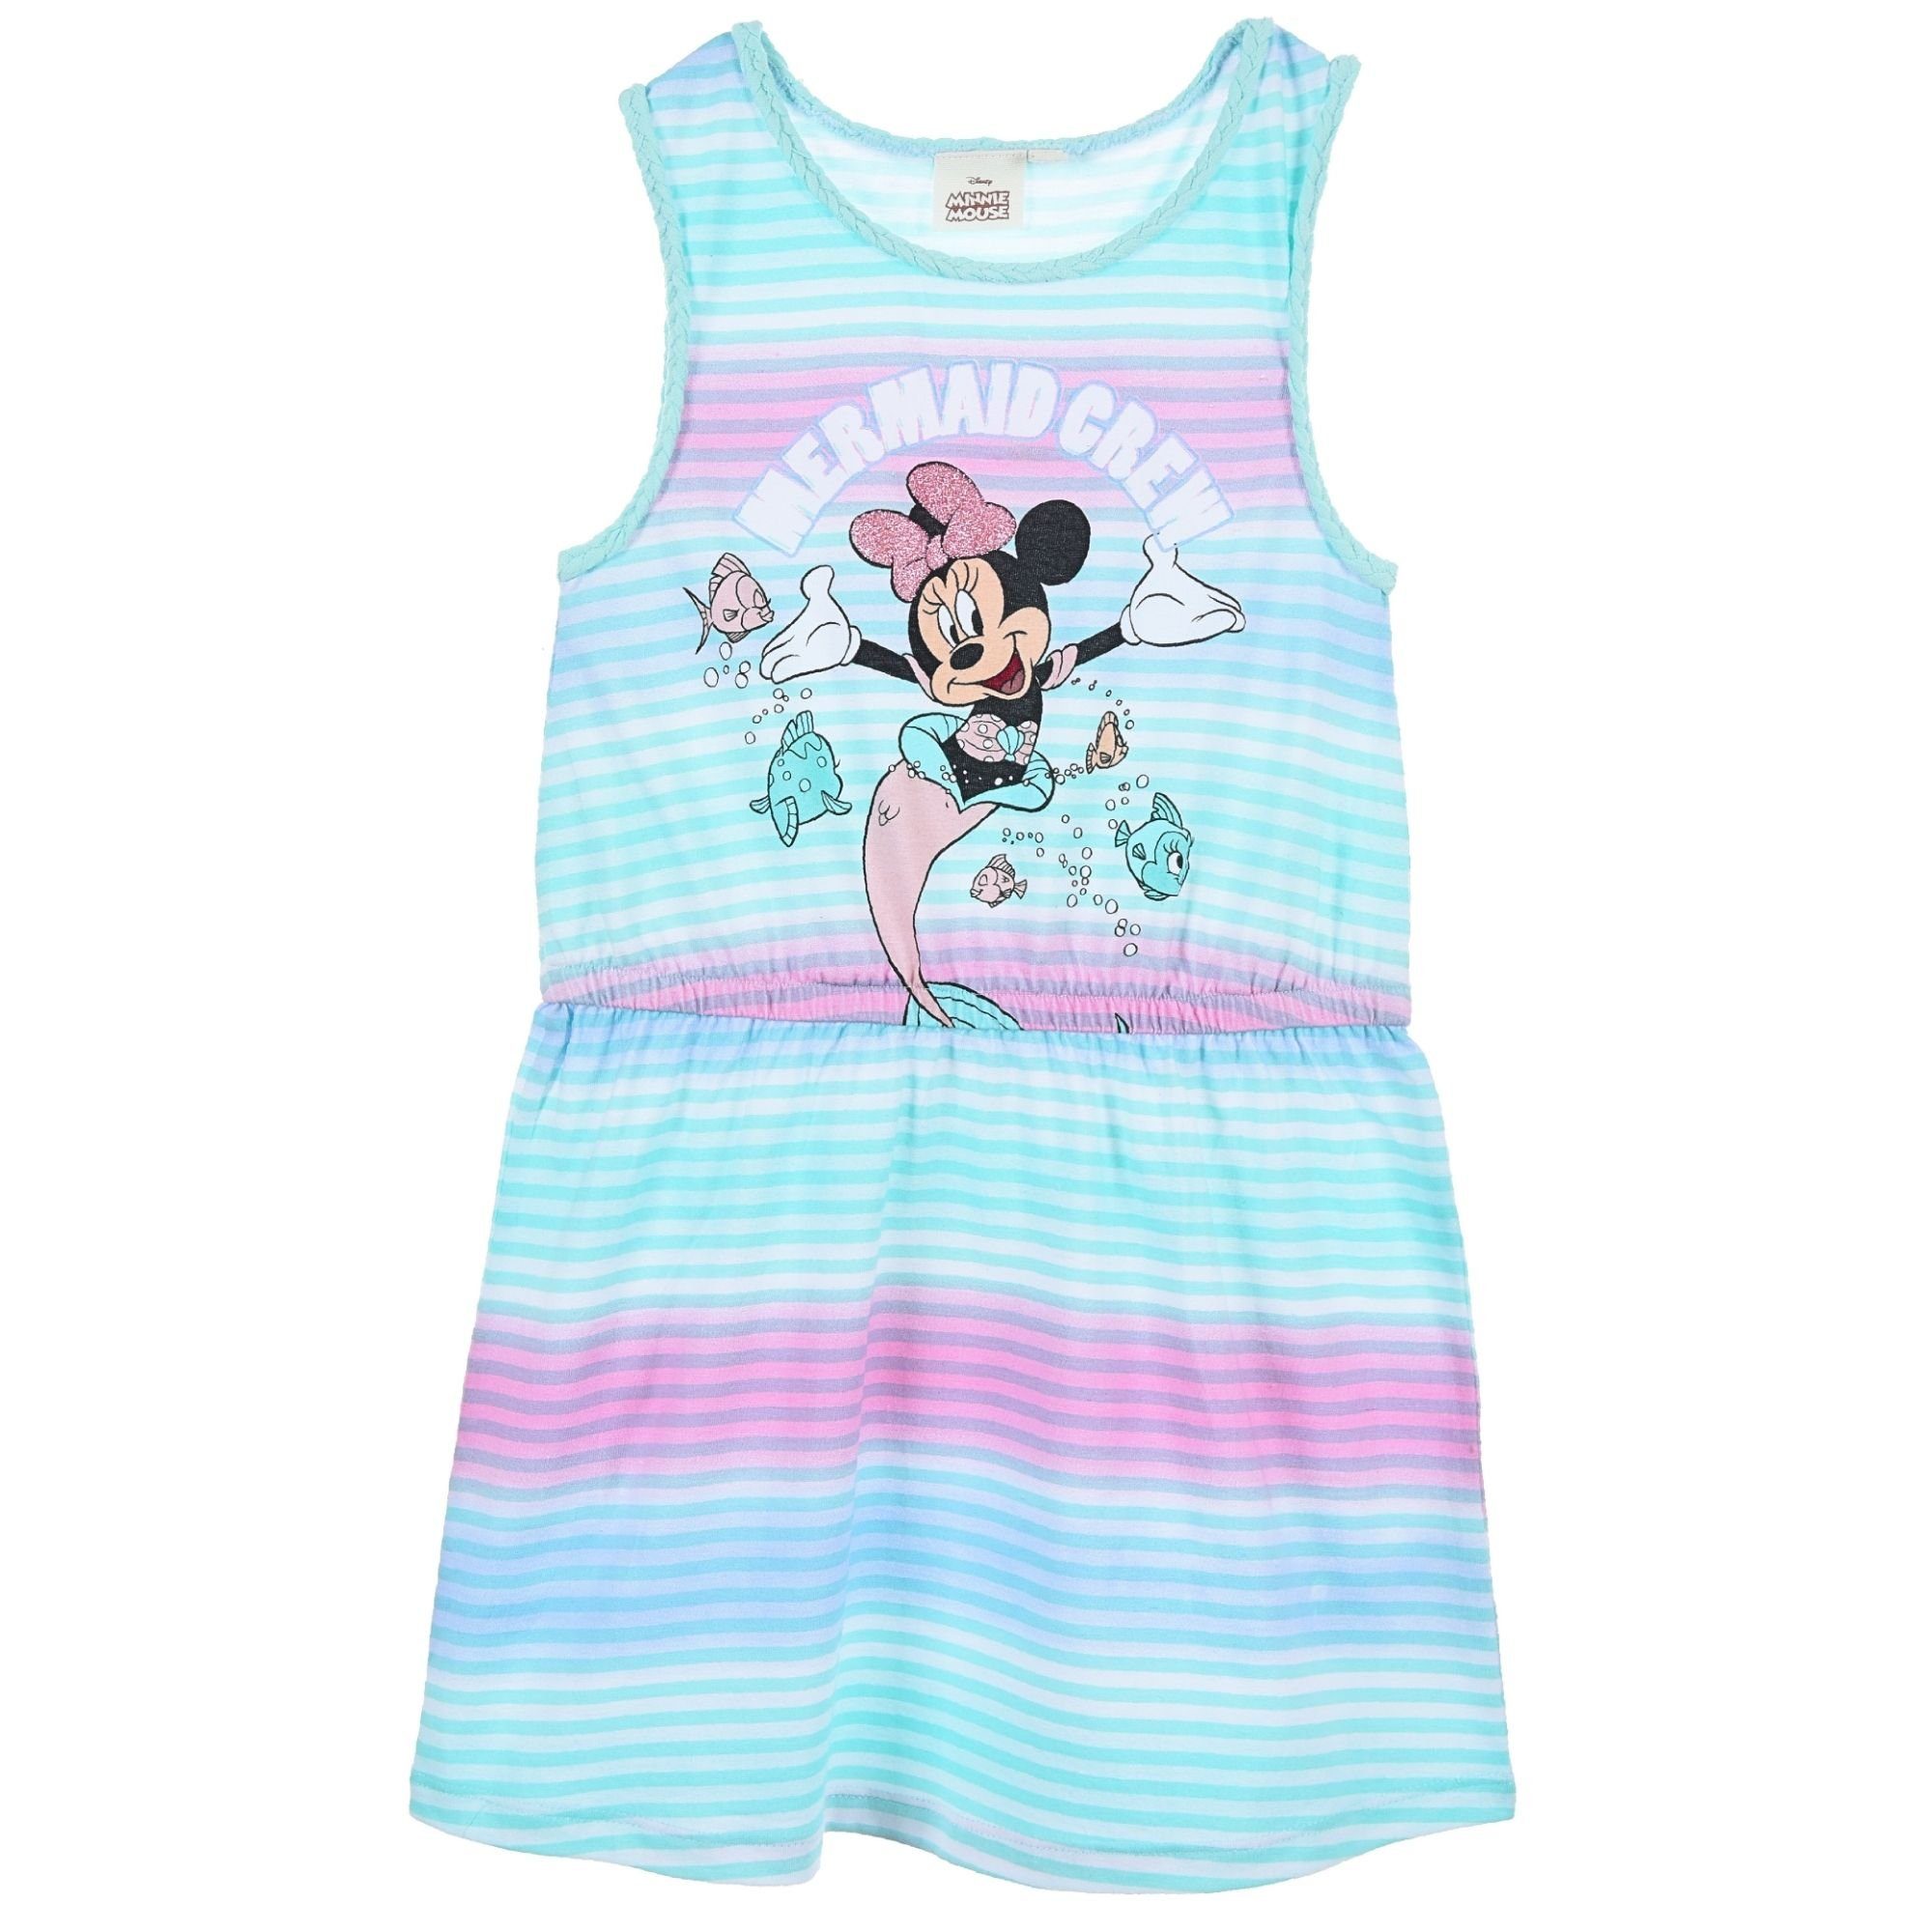 Disney Minnie Mouse Sommerkleid Minnie Maus- Mermaid Crew Mädchen Jerseykleid Gr. 98-128 cm Türkis